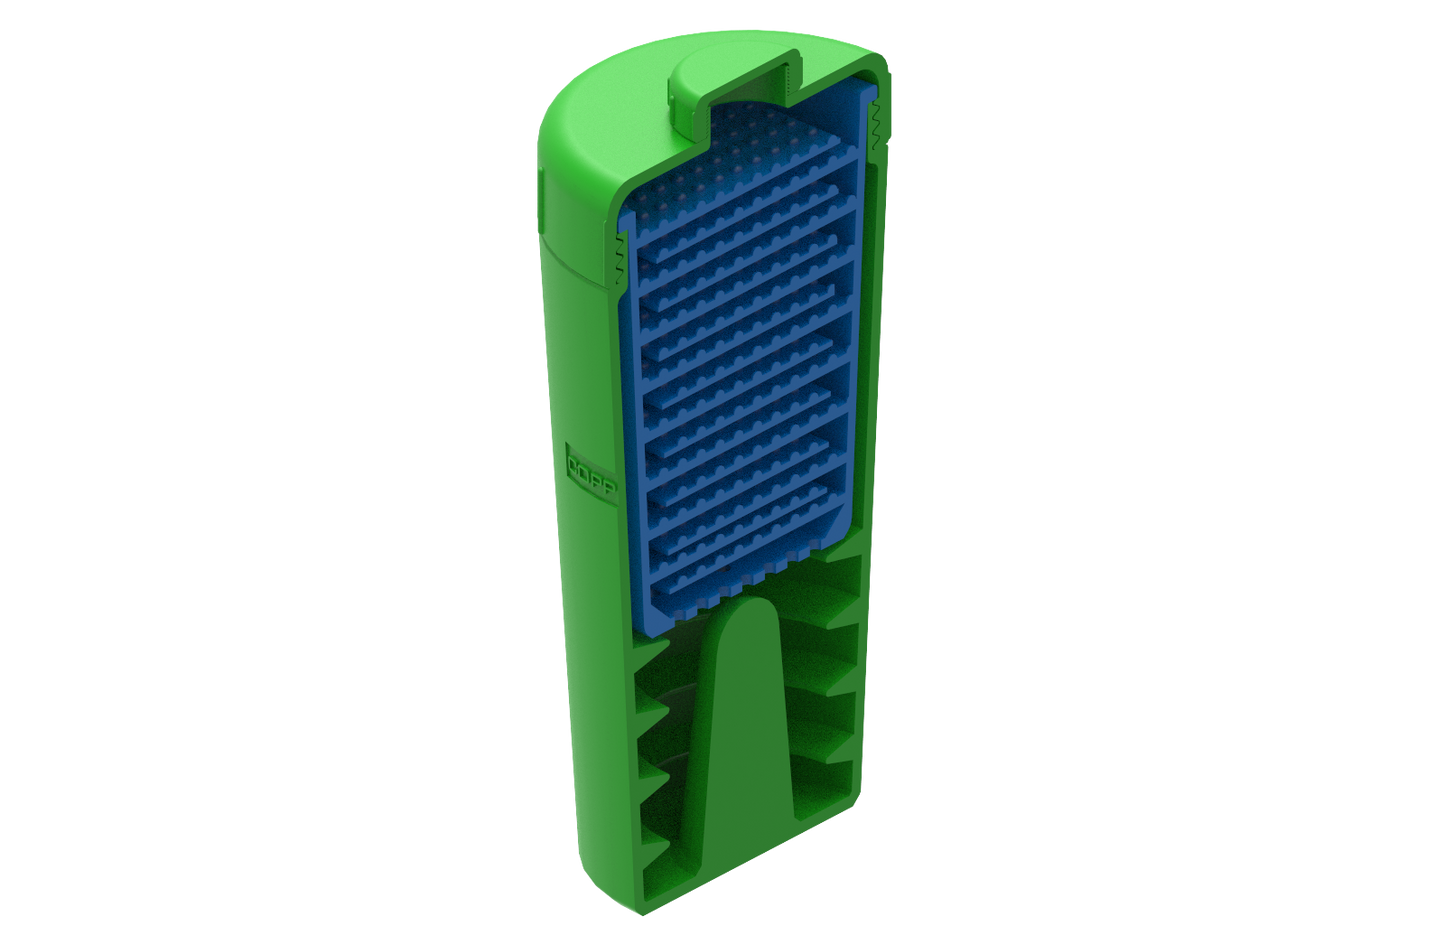 PLA Filament Copper 3D PLActive - Innovative Antibacterial 2.85mm 50gram Apple Green Color 3D Printer Filament